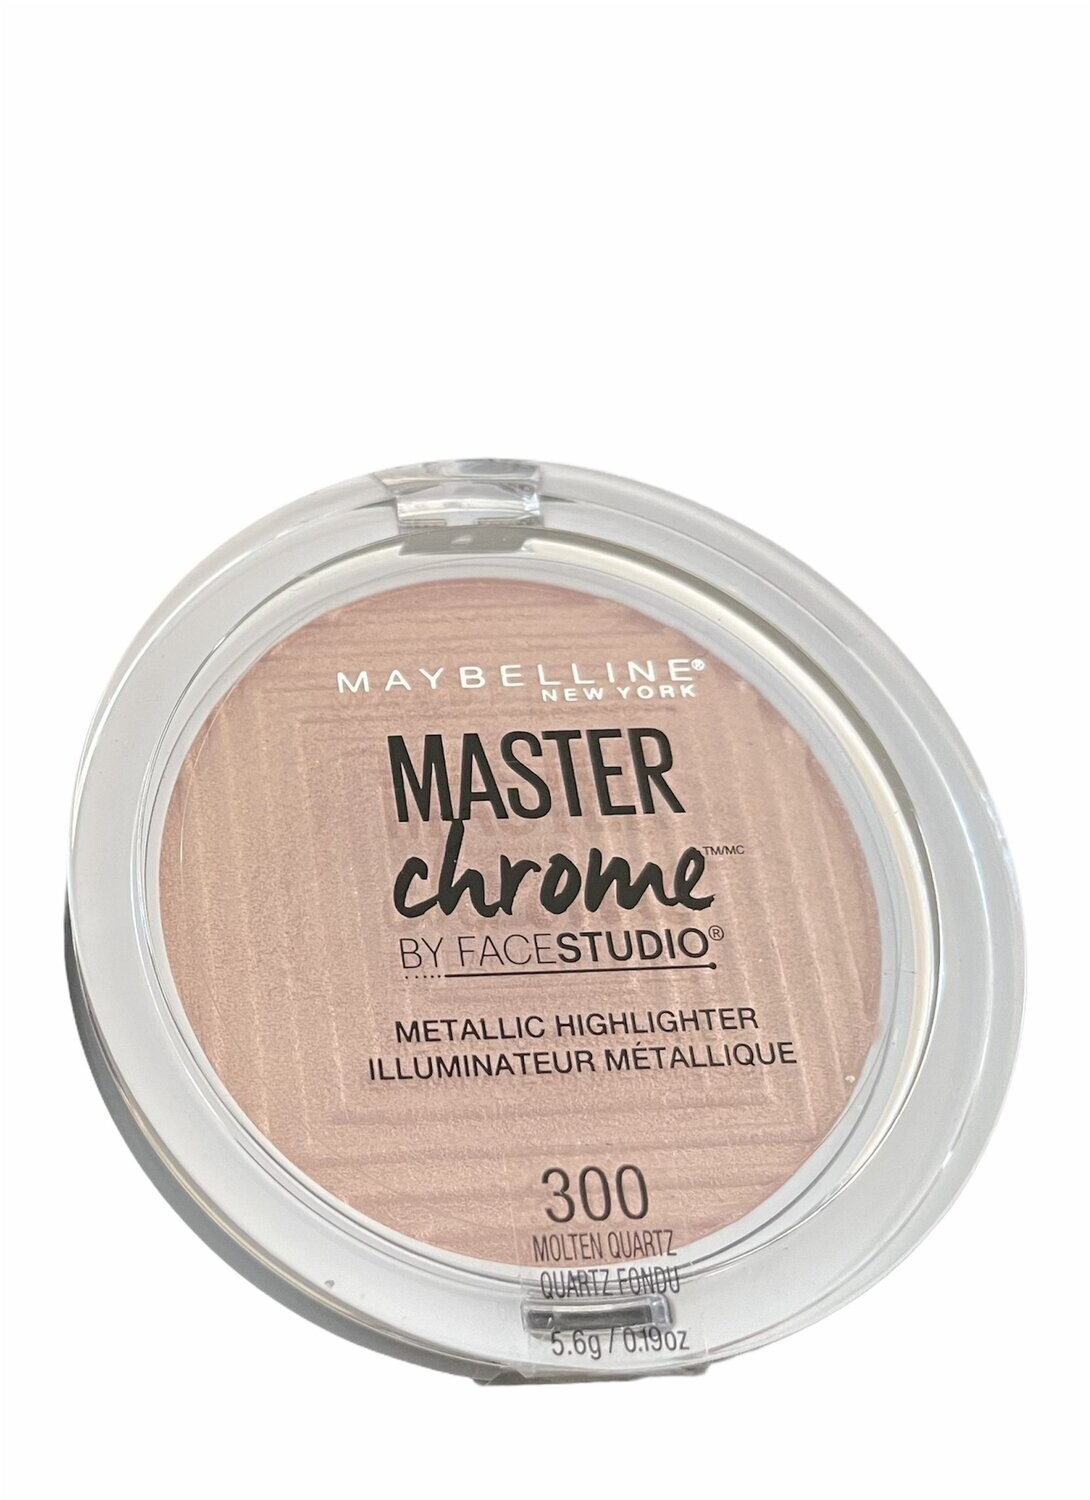 Maybelline Master Chrome Metallic Highlighter 300